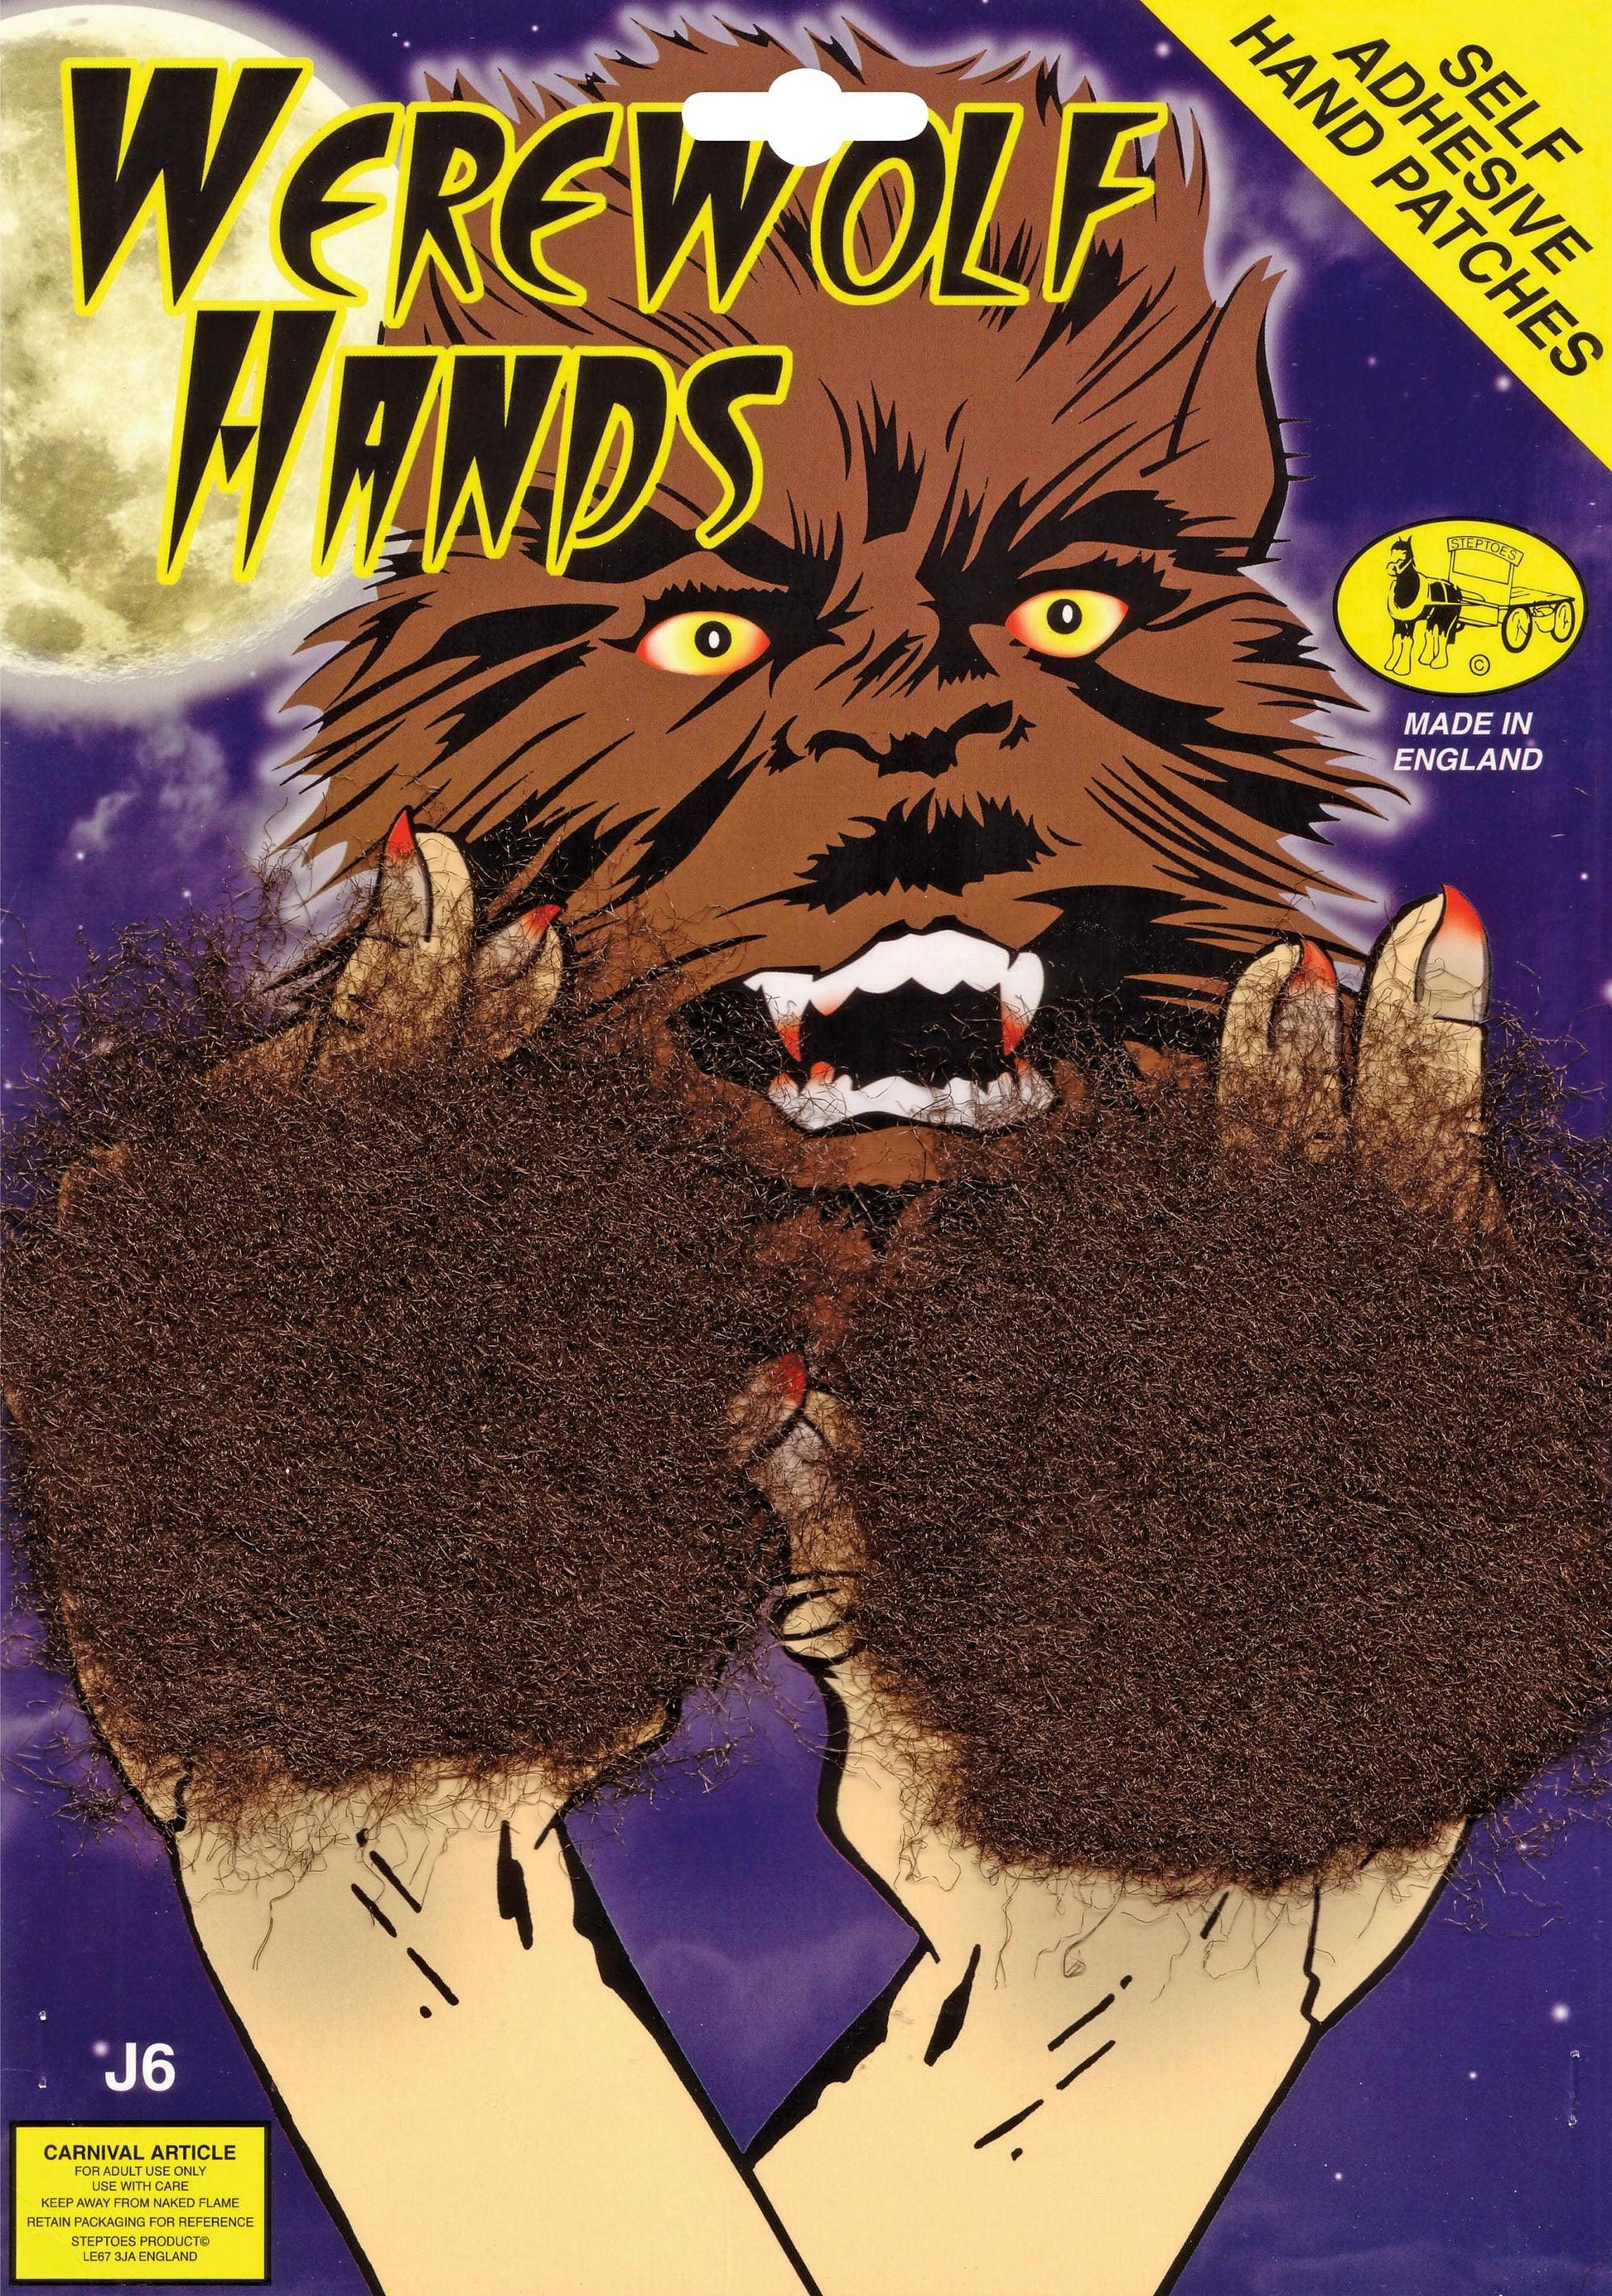 Werewolf Hand Patches - Labreeze